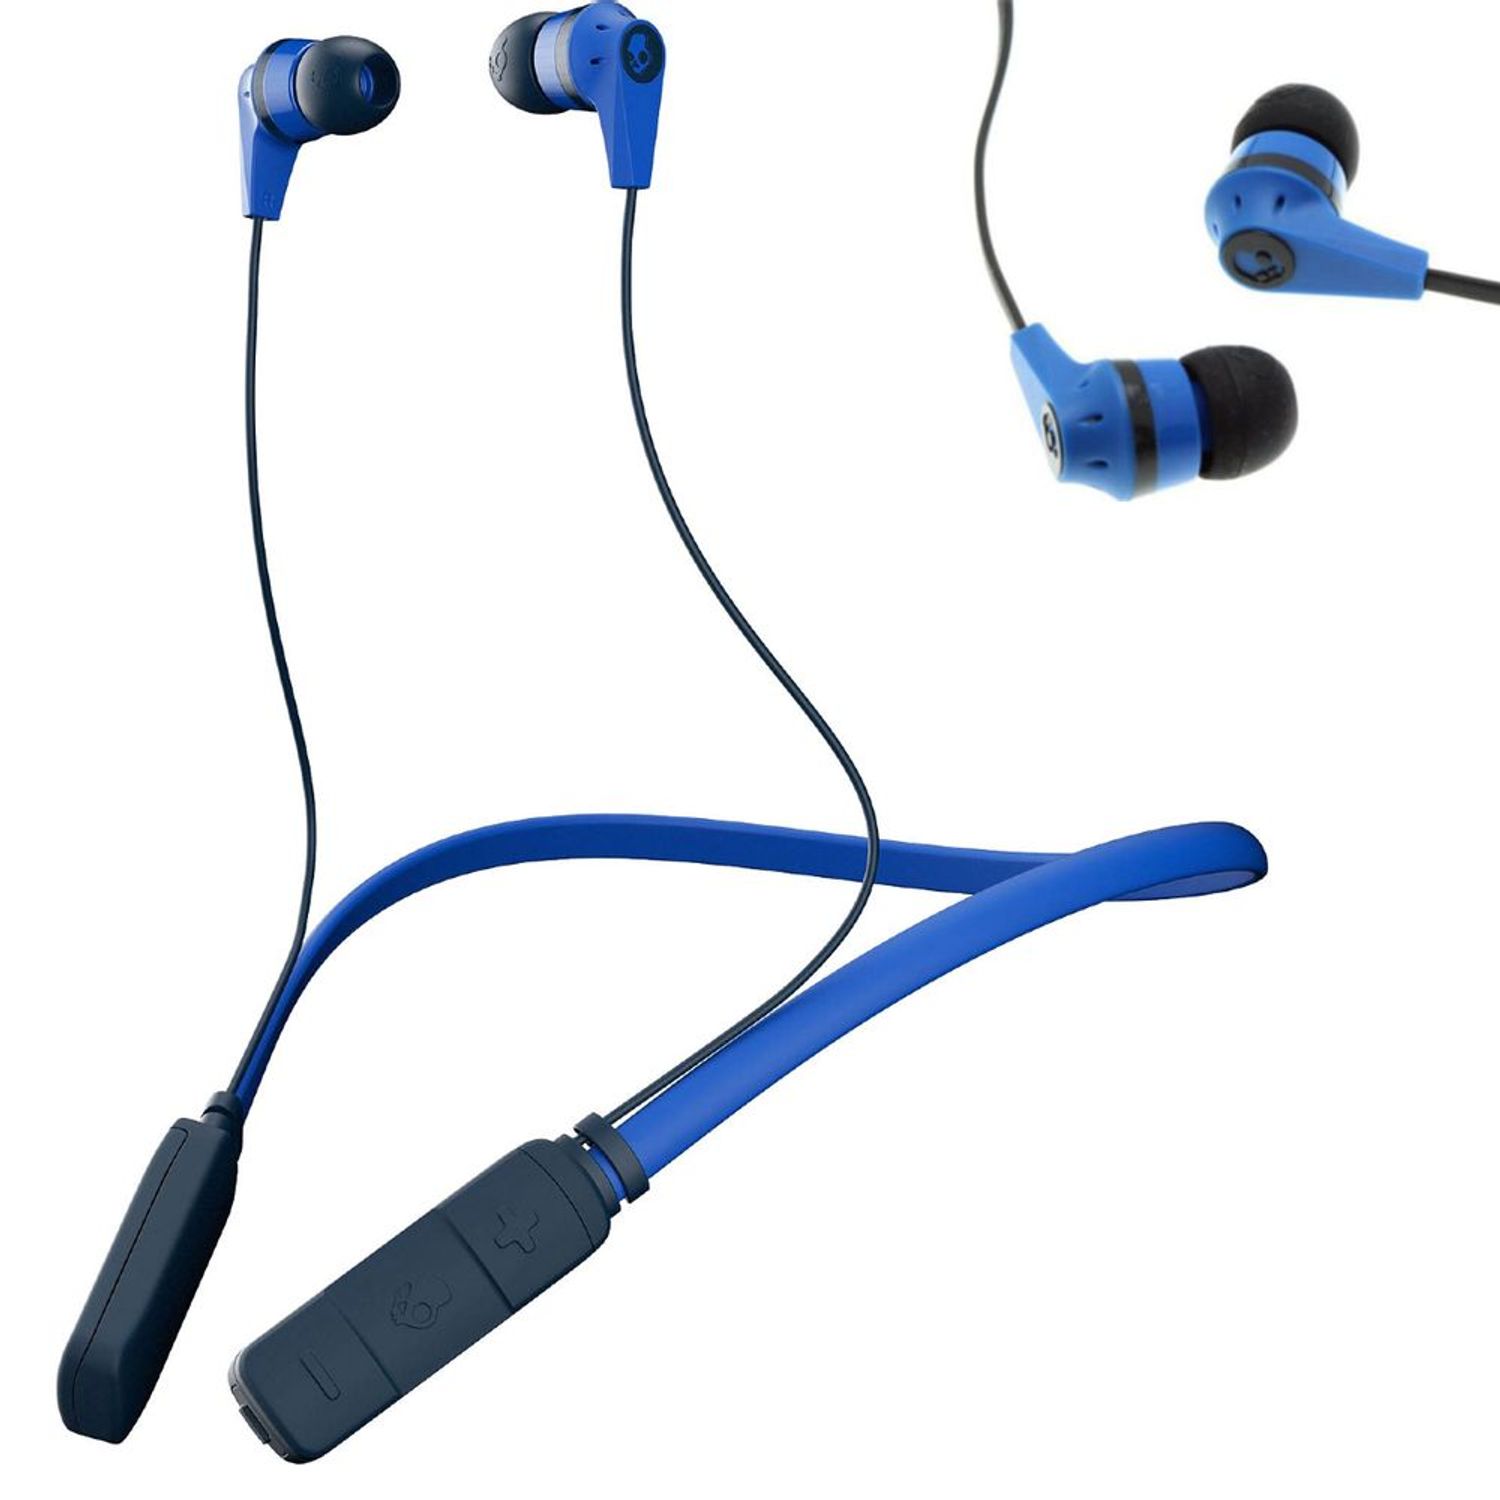 sustracción satisfacción mostrador Audifonos Skullcandy Inkd Bluetooth Wireless Control de Volumen 8 Horas  Azul | Oechsle - Oechsle